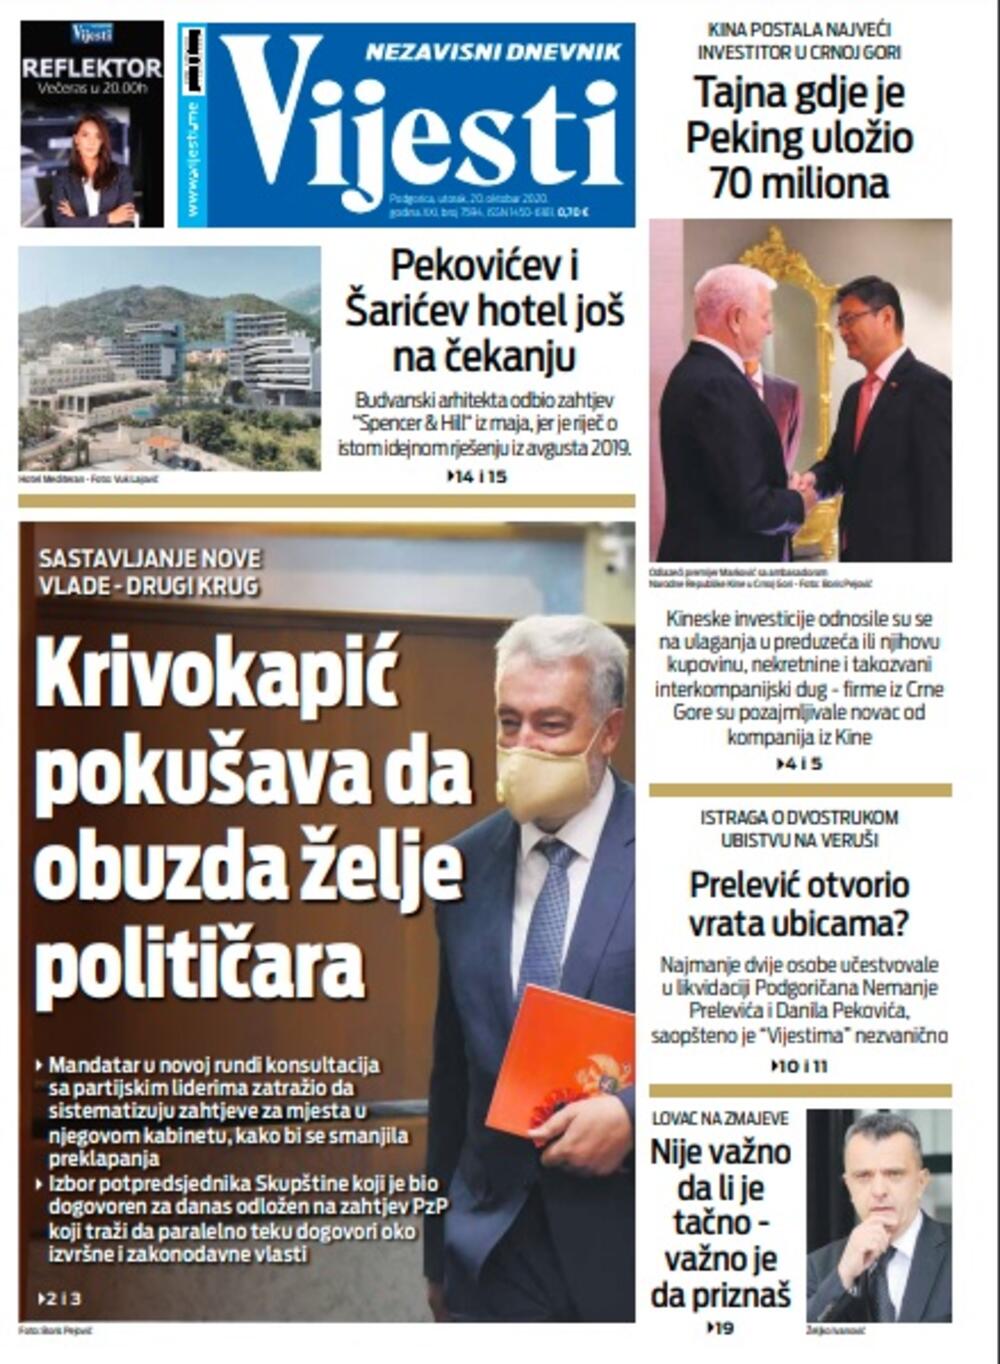 Naslovna strana "Vijesti" za utorak 20. oktobar 2020. godine, Foto: Vijesti